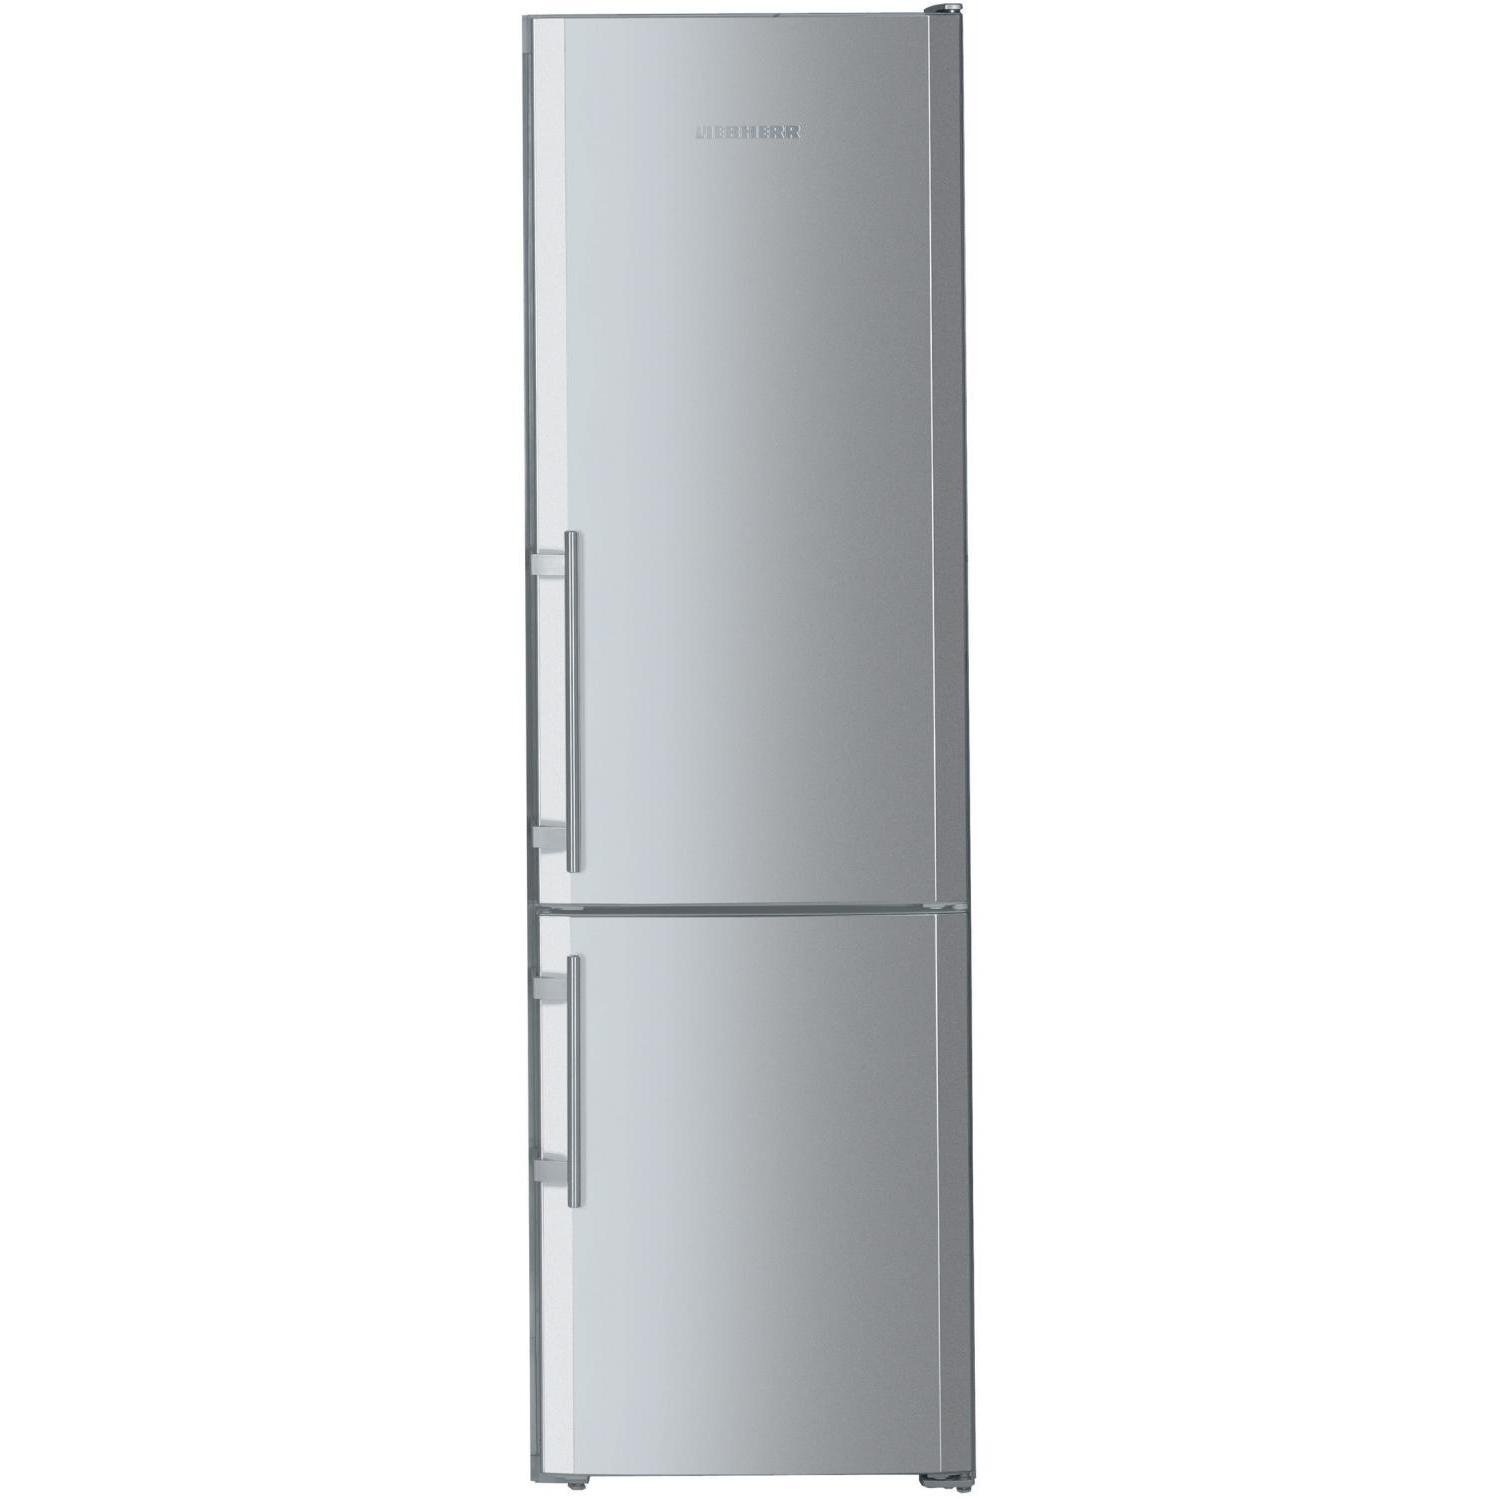 Холодильник узкий 45 купить. Холодильник Liebherr 55 см. Холодильник Liebherr двухкамерный высота 180 серебристый. Холодильник шириной 55 см двухкамерный Либхер бежевый. Холодильник Liebherr 55 см ширина.